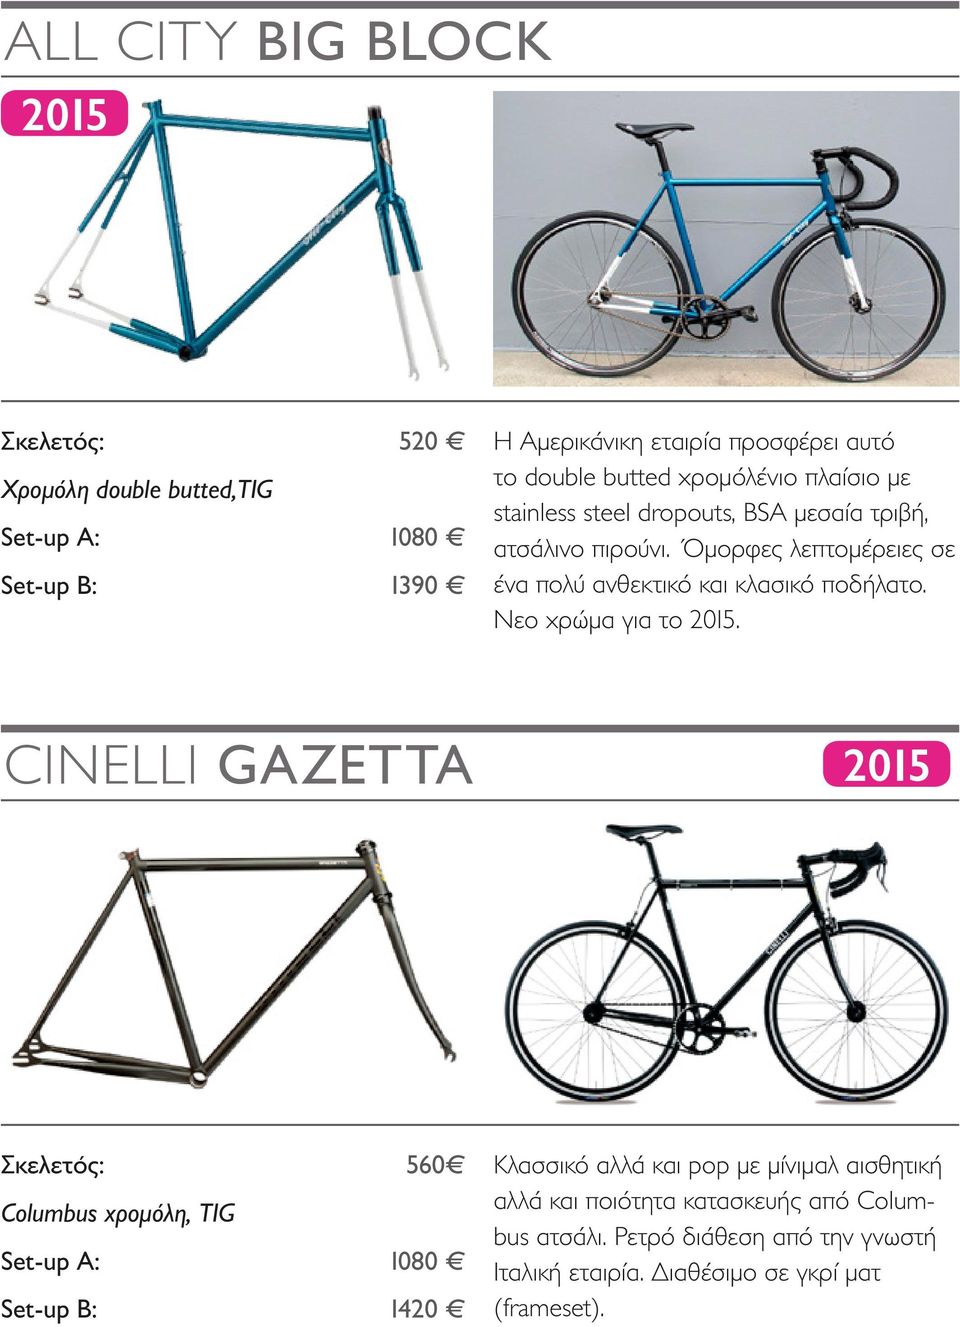 Όμορφες λεπτομέρειες σε ένα πολύ ανθεκτικό και κλασικό ποδήλατο. Νεο χρώμα για το 2015.